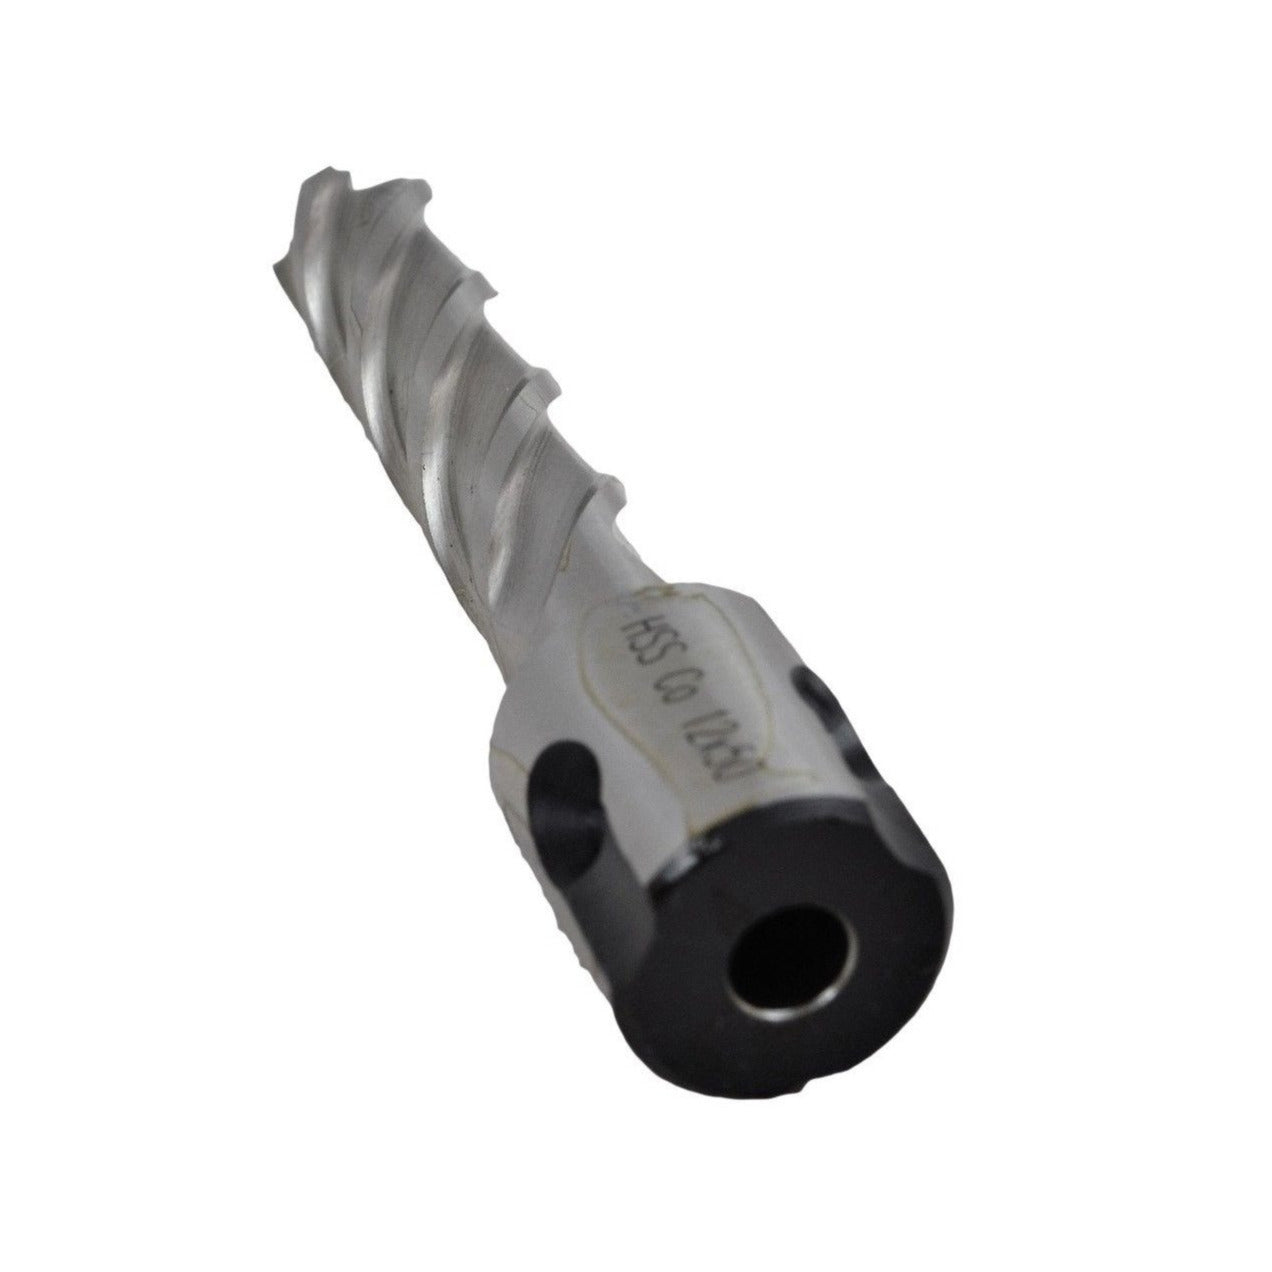 12x50 mm HSS Annular Broach Cutter ; Magnetic Drill ; Rotabroach ; Universal Shank